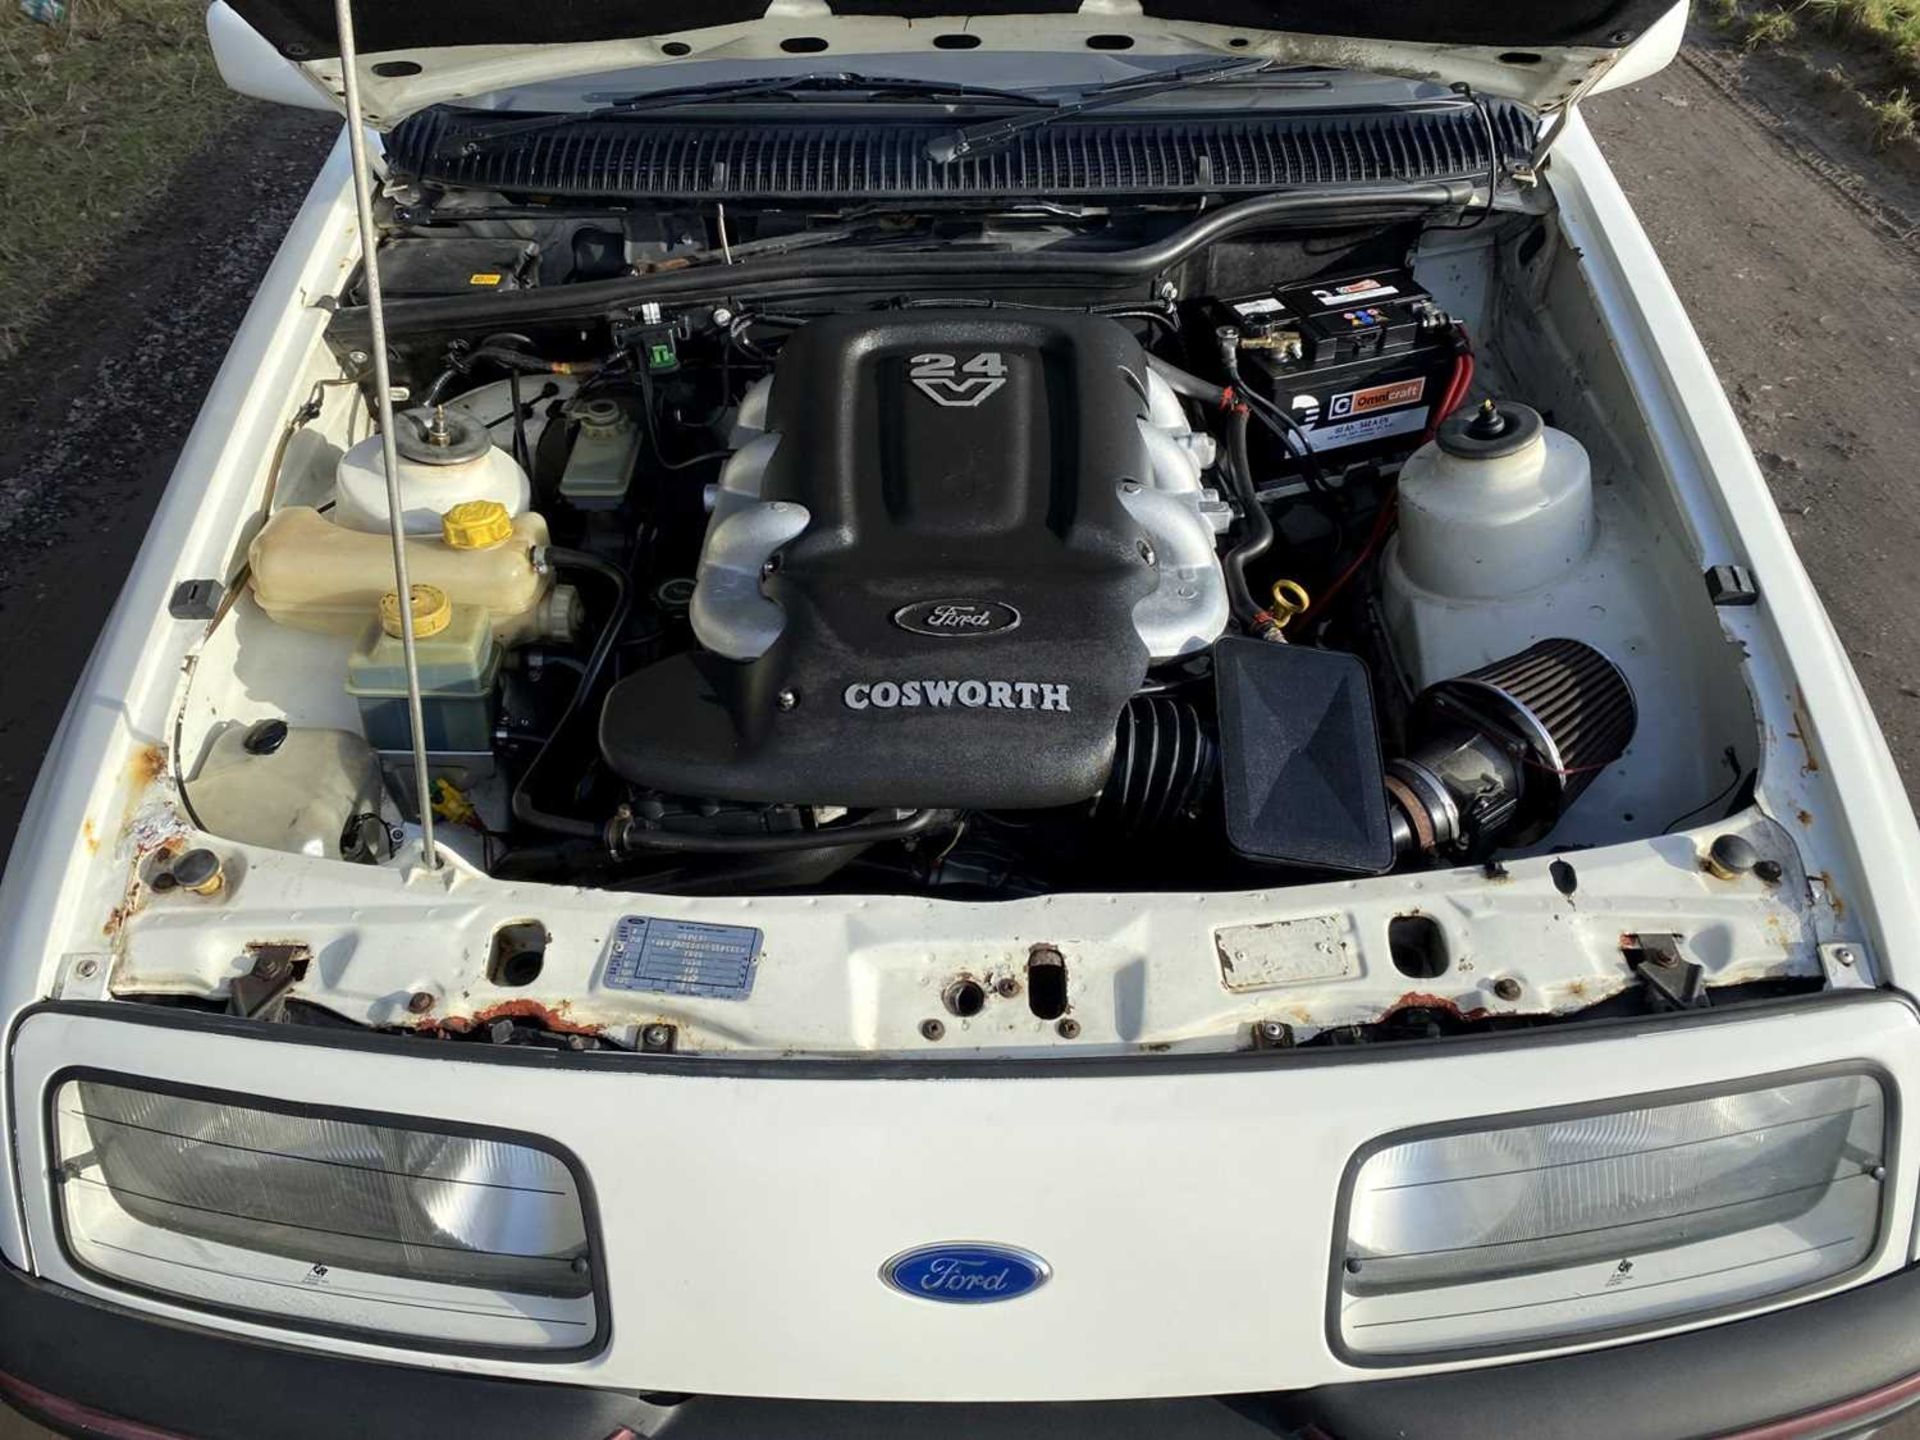 1984 Ford XR4i 24V Cosworth V6 Engine Conversion *** NO RESERVE *** - Image 34 of 76